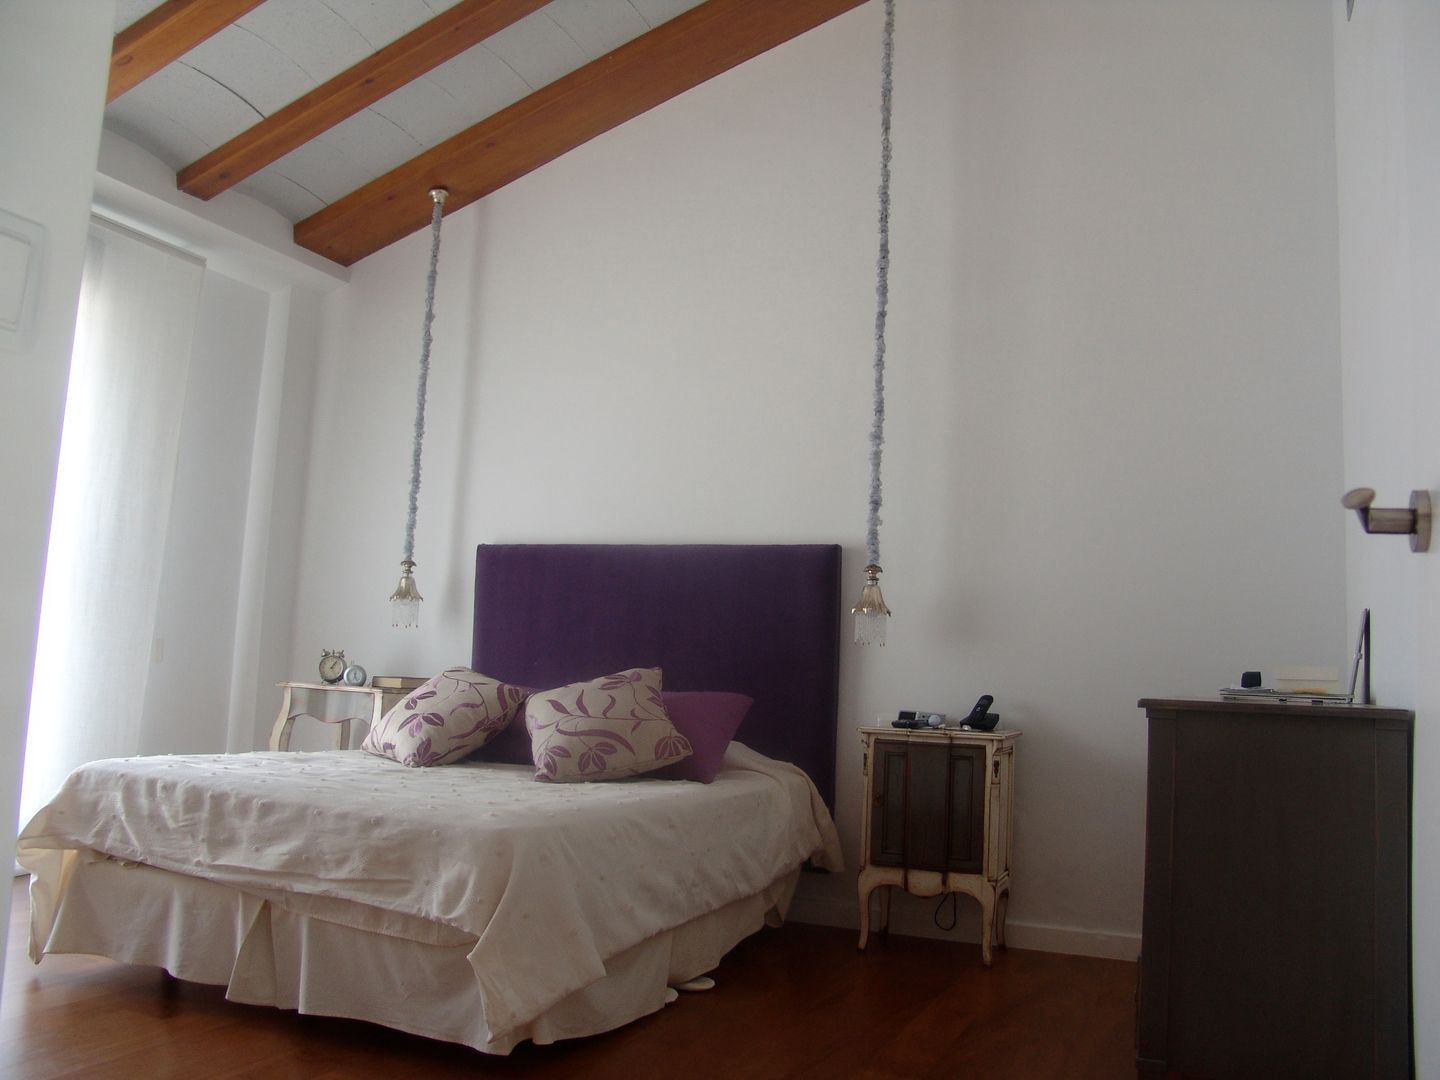 Residencia Privada, I AM Home I AM Home Phòng ngủ: thiết kế nội thất · bố trí · ảnh